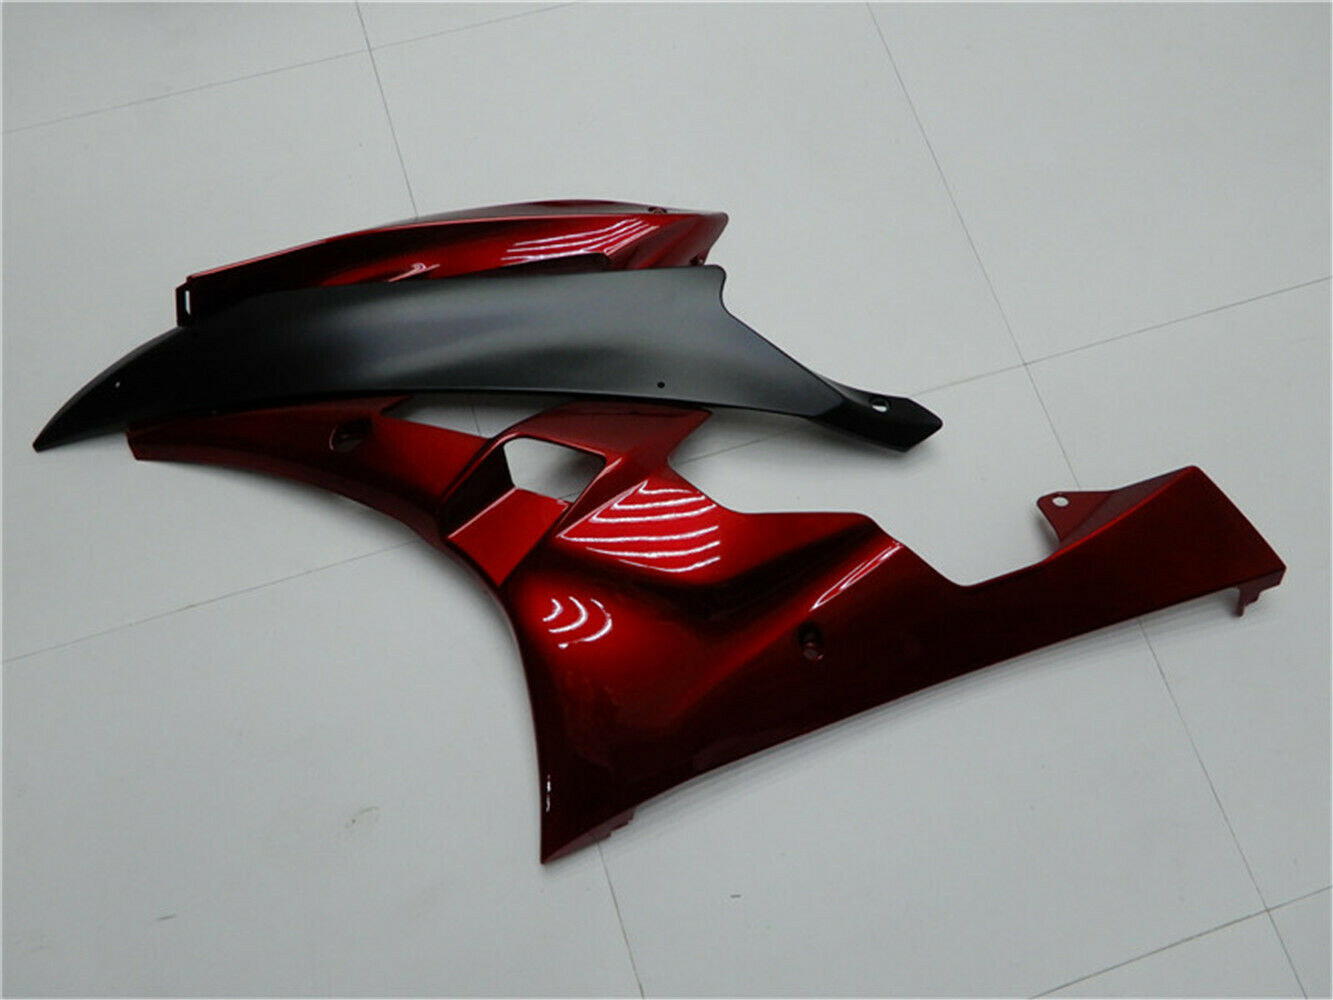 Amotopart nouveau carénage de Kits de plastique d'injection rouge noir pour Yamaha 2006 2007 YZF R6 générique